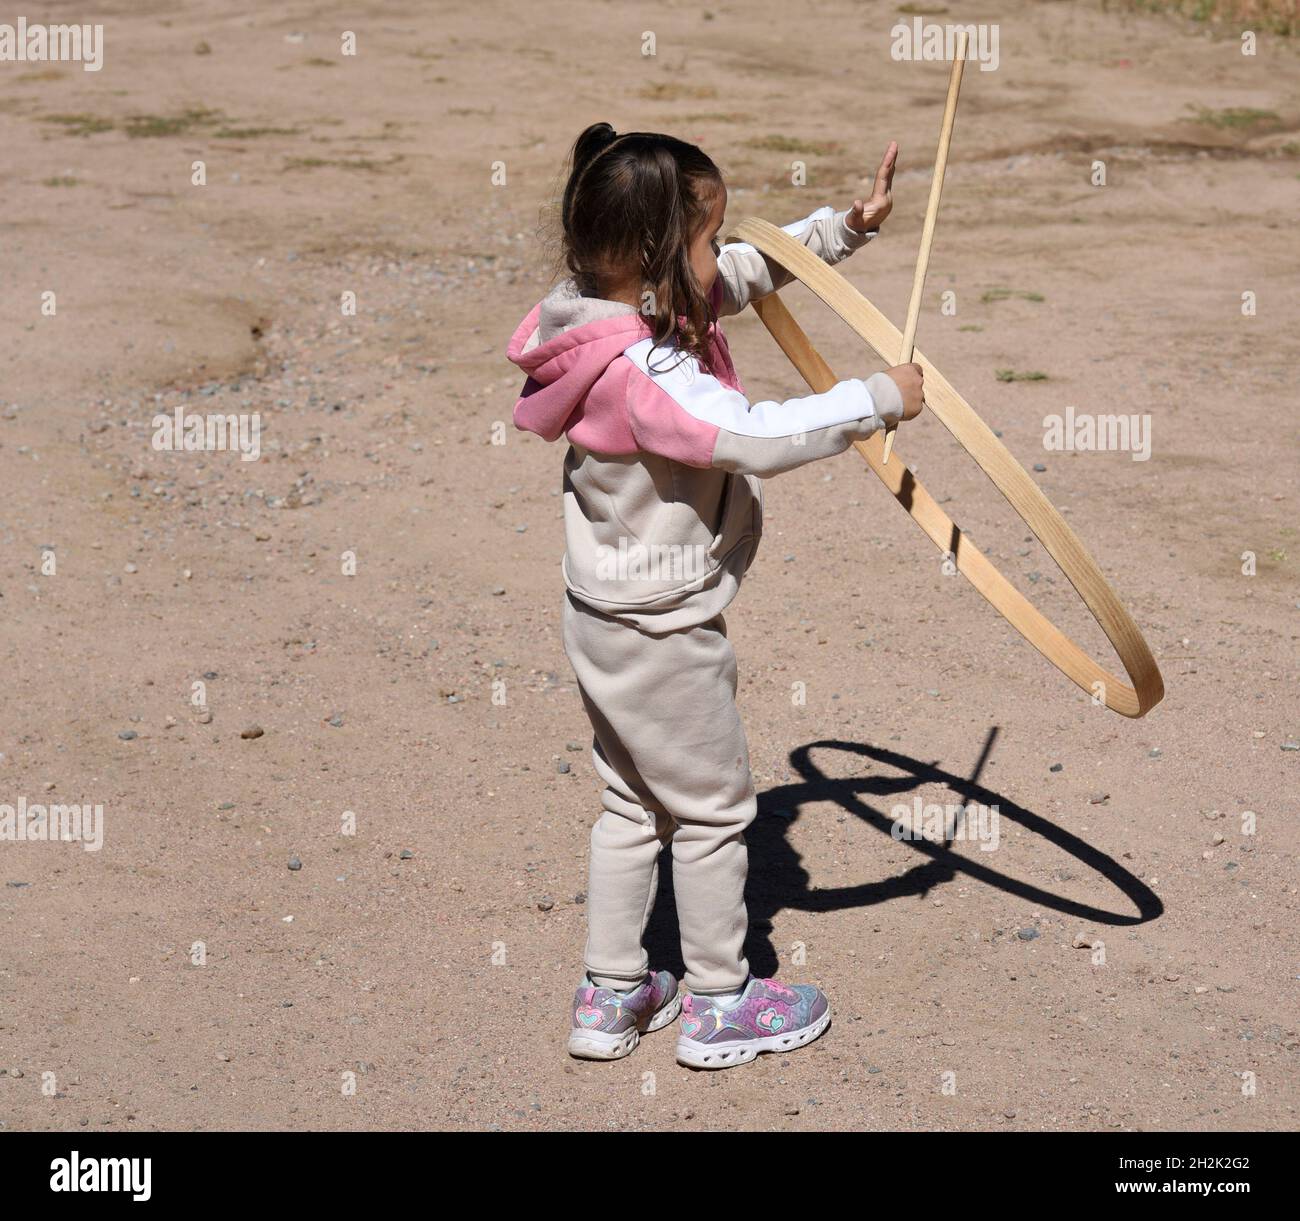 Joven indio niña jugando con hula hoop toy sobre fondo blanco - mr#736m -  rmm 151210 Fotografía de stock - Alamy